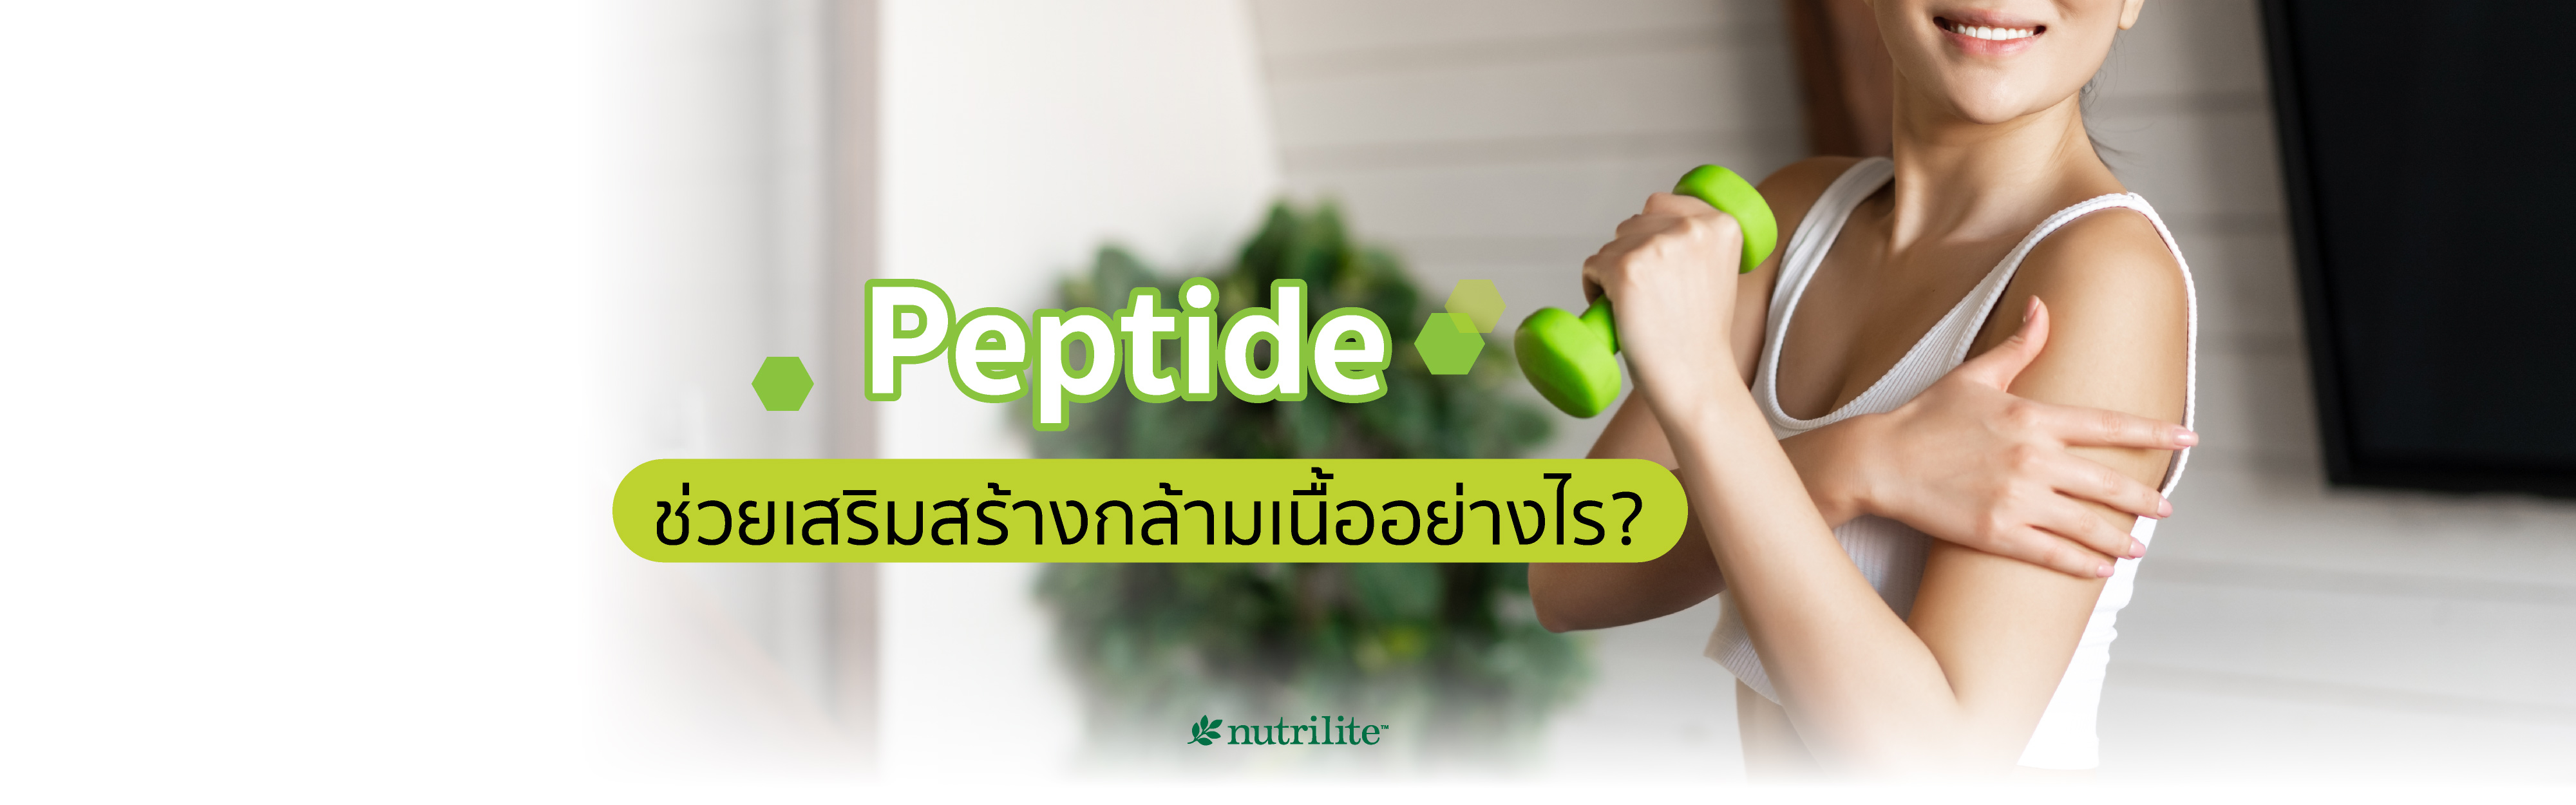 Peptide ช่วยเสริมสร้างกล้ามเนื้ออย่างไร?